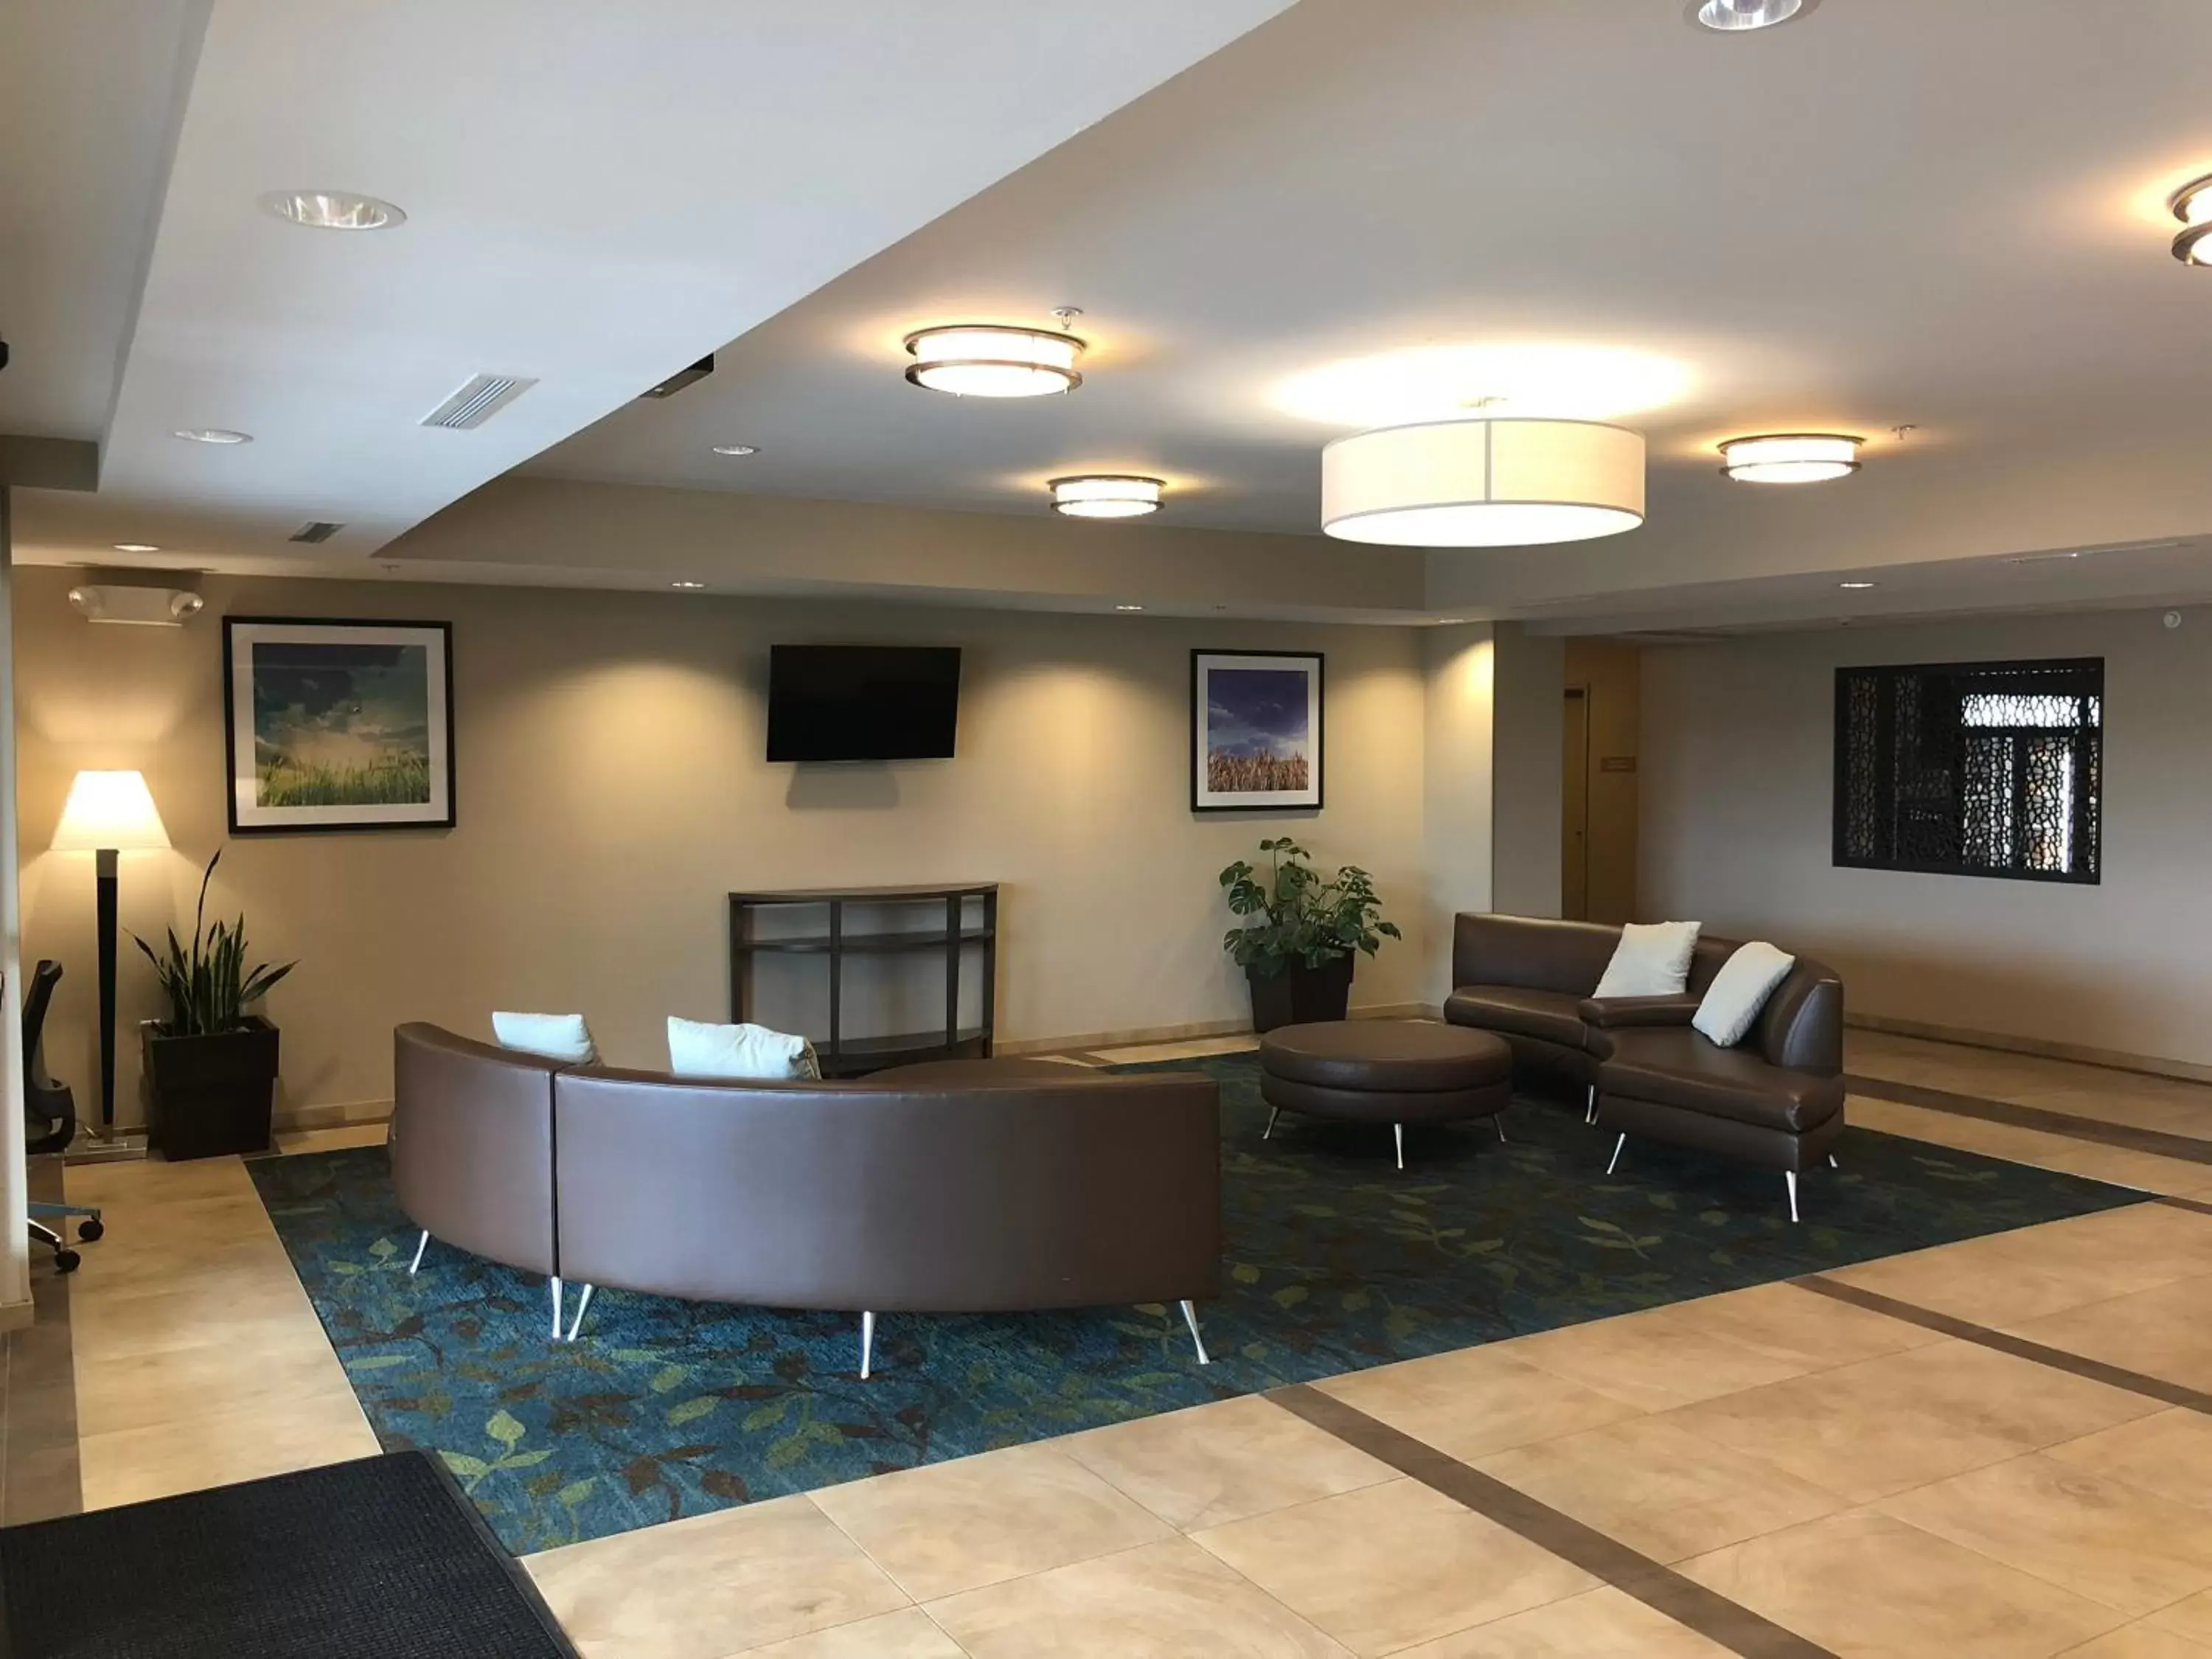 Property building, Lobby/Reception in Candlewood Suites - El Dorado, an IHG Hotel